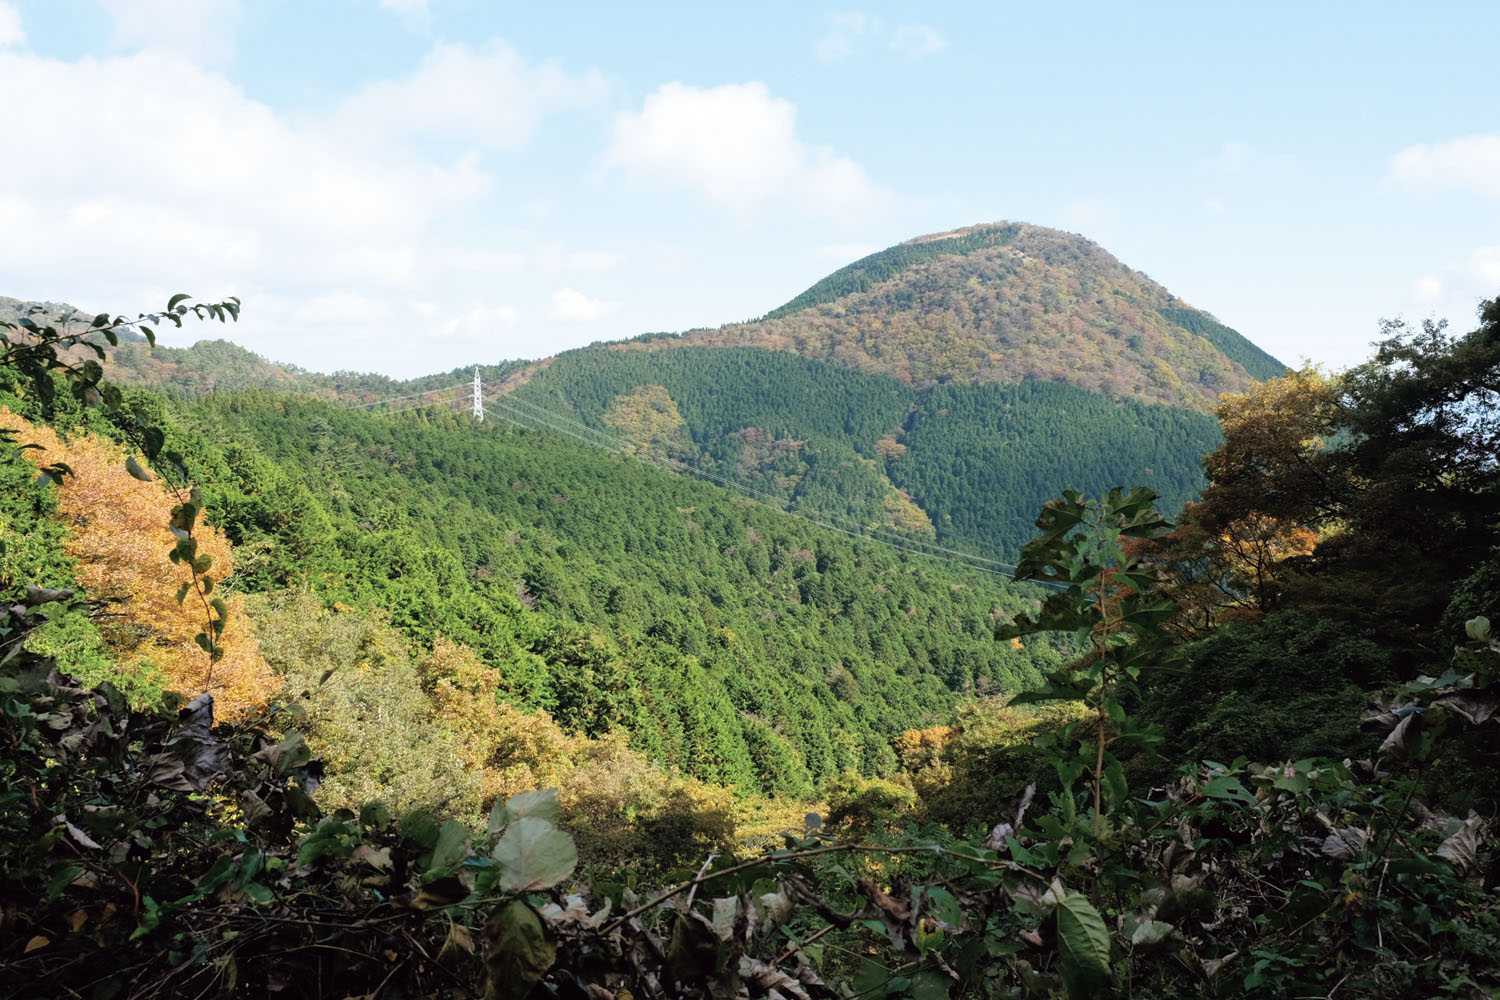 足柄万葉公園の先、矢倉岳へ向かう途中から見えた矢倉岳山頂。高く遠くに見えるが、それほど大変な登山ではない。